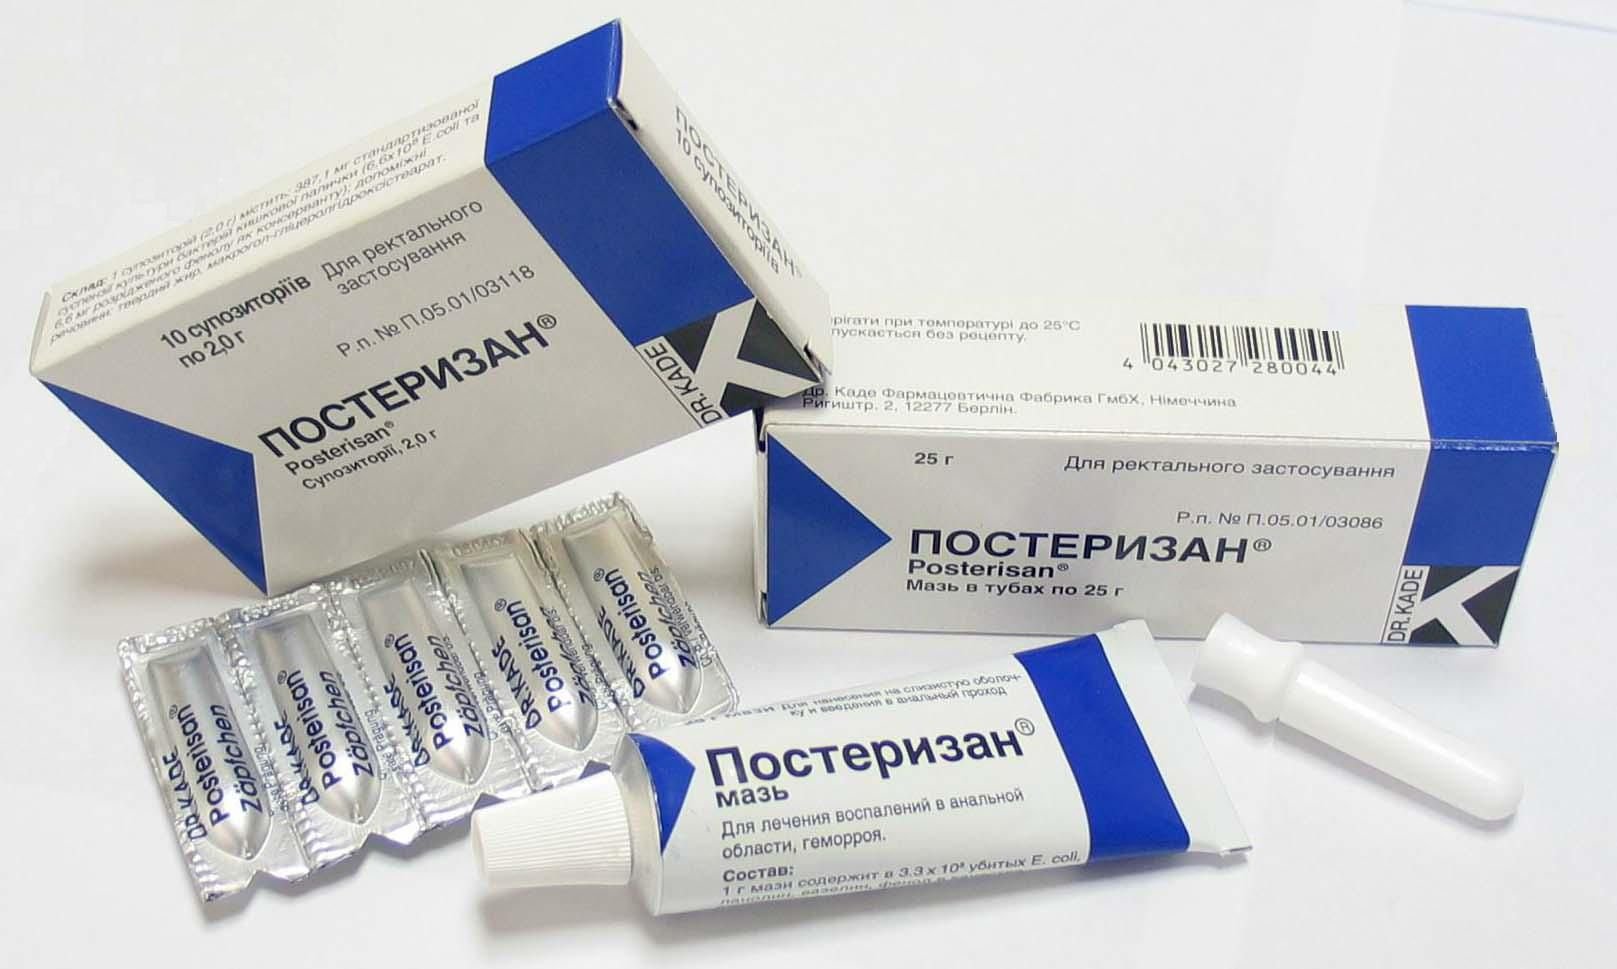 Мазь Проктоседил относится к группе комбинированных препаратов местного действия, применяется в проктологии для лечения геморроя